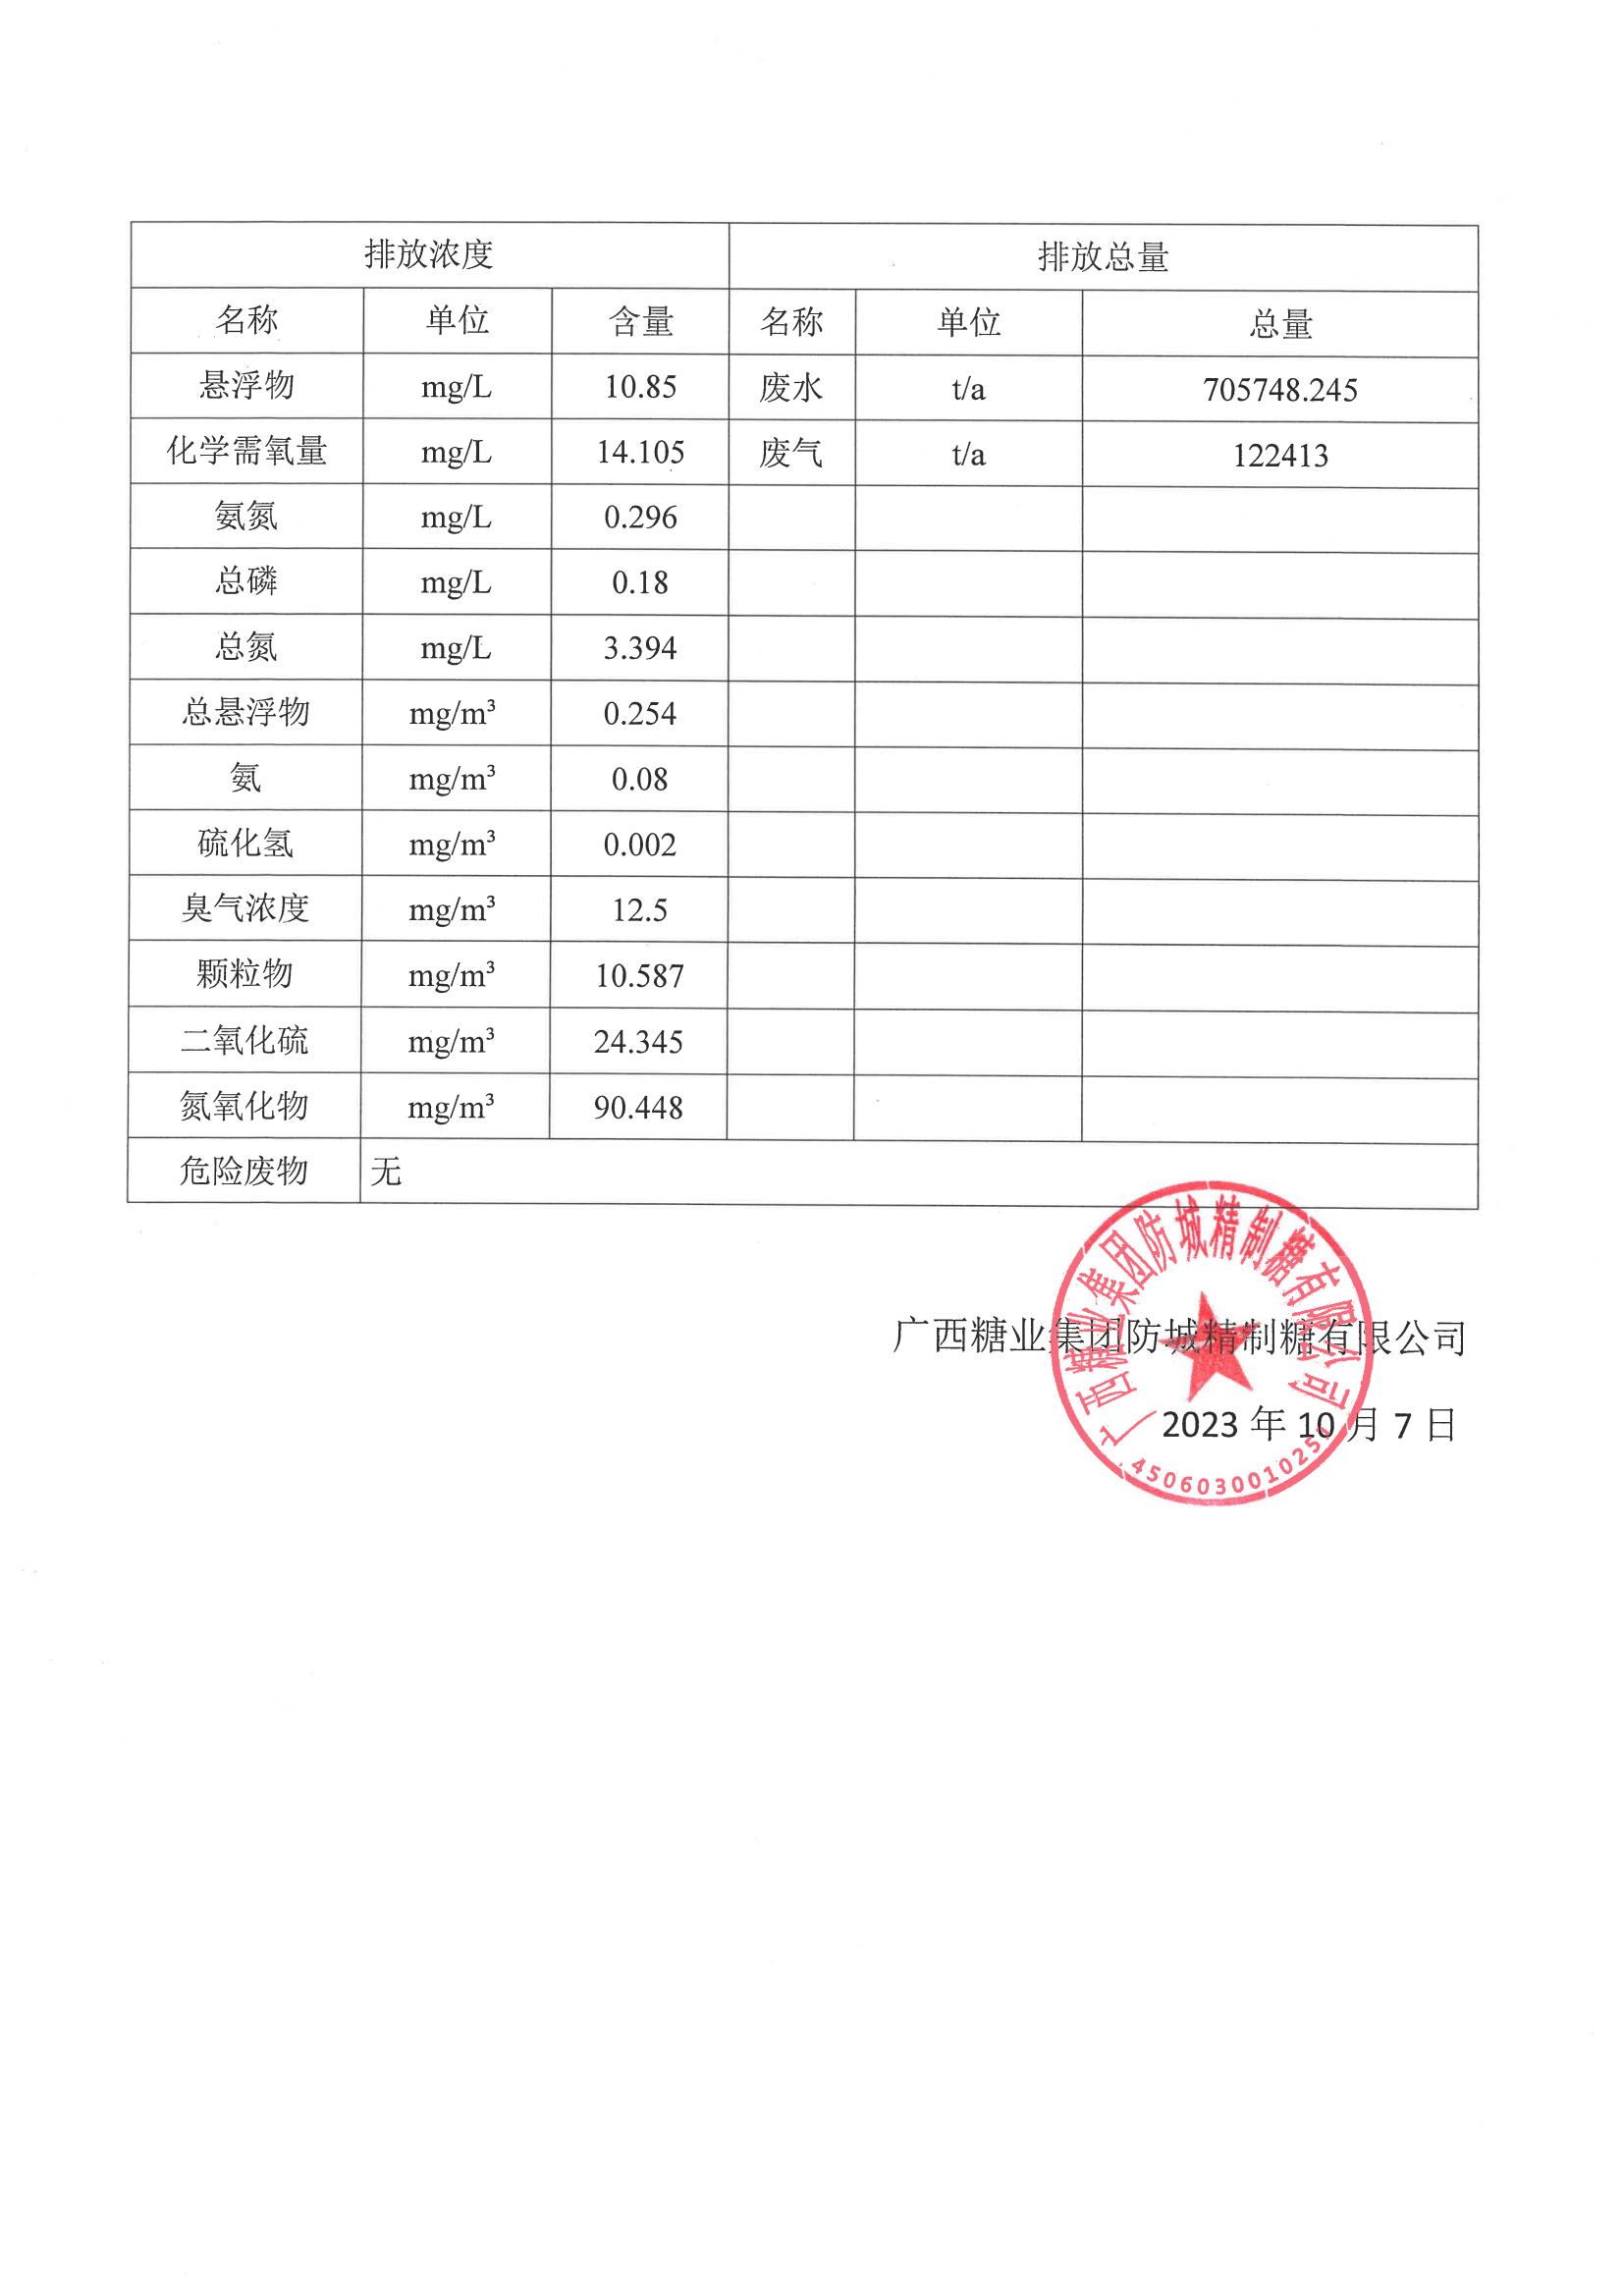 广西糖业集团防城精制糖有限公司清洁生产审核信息公示(4)(1)_01.jpg